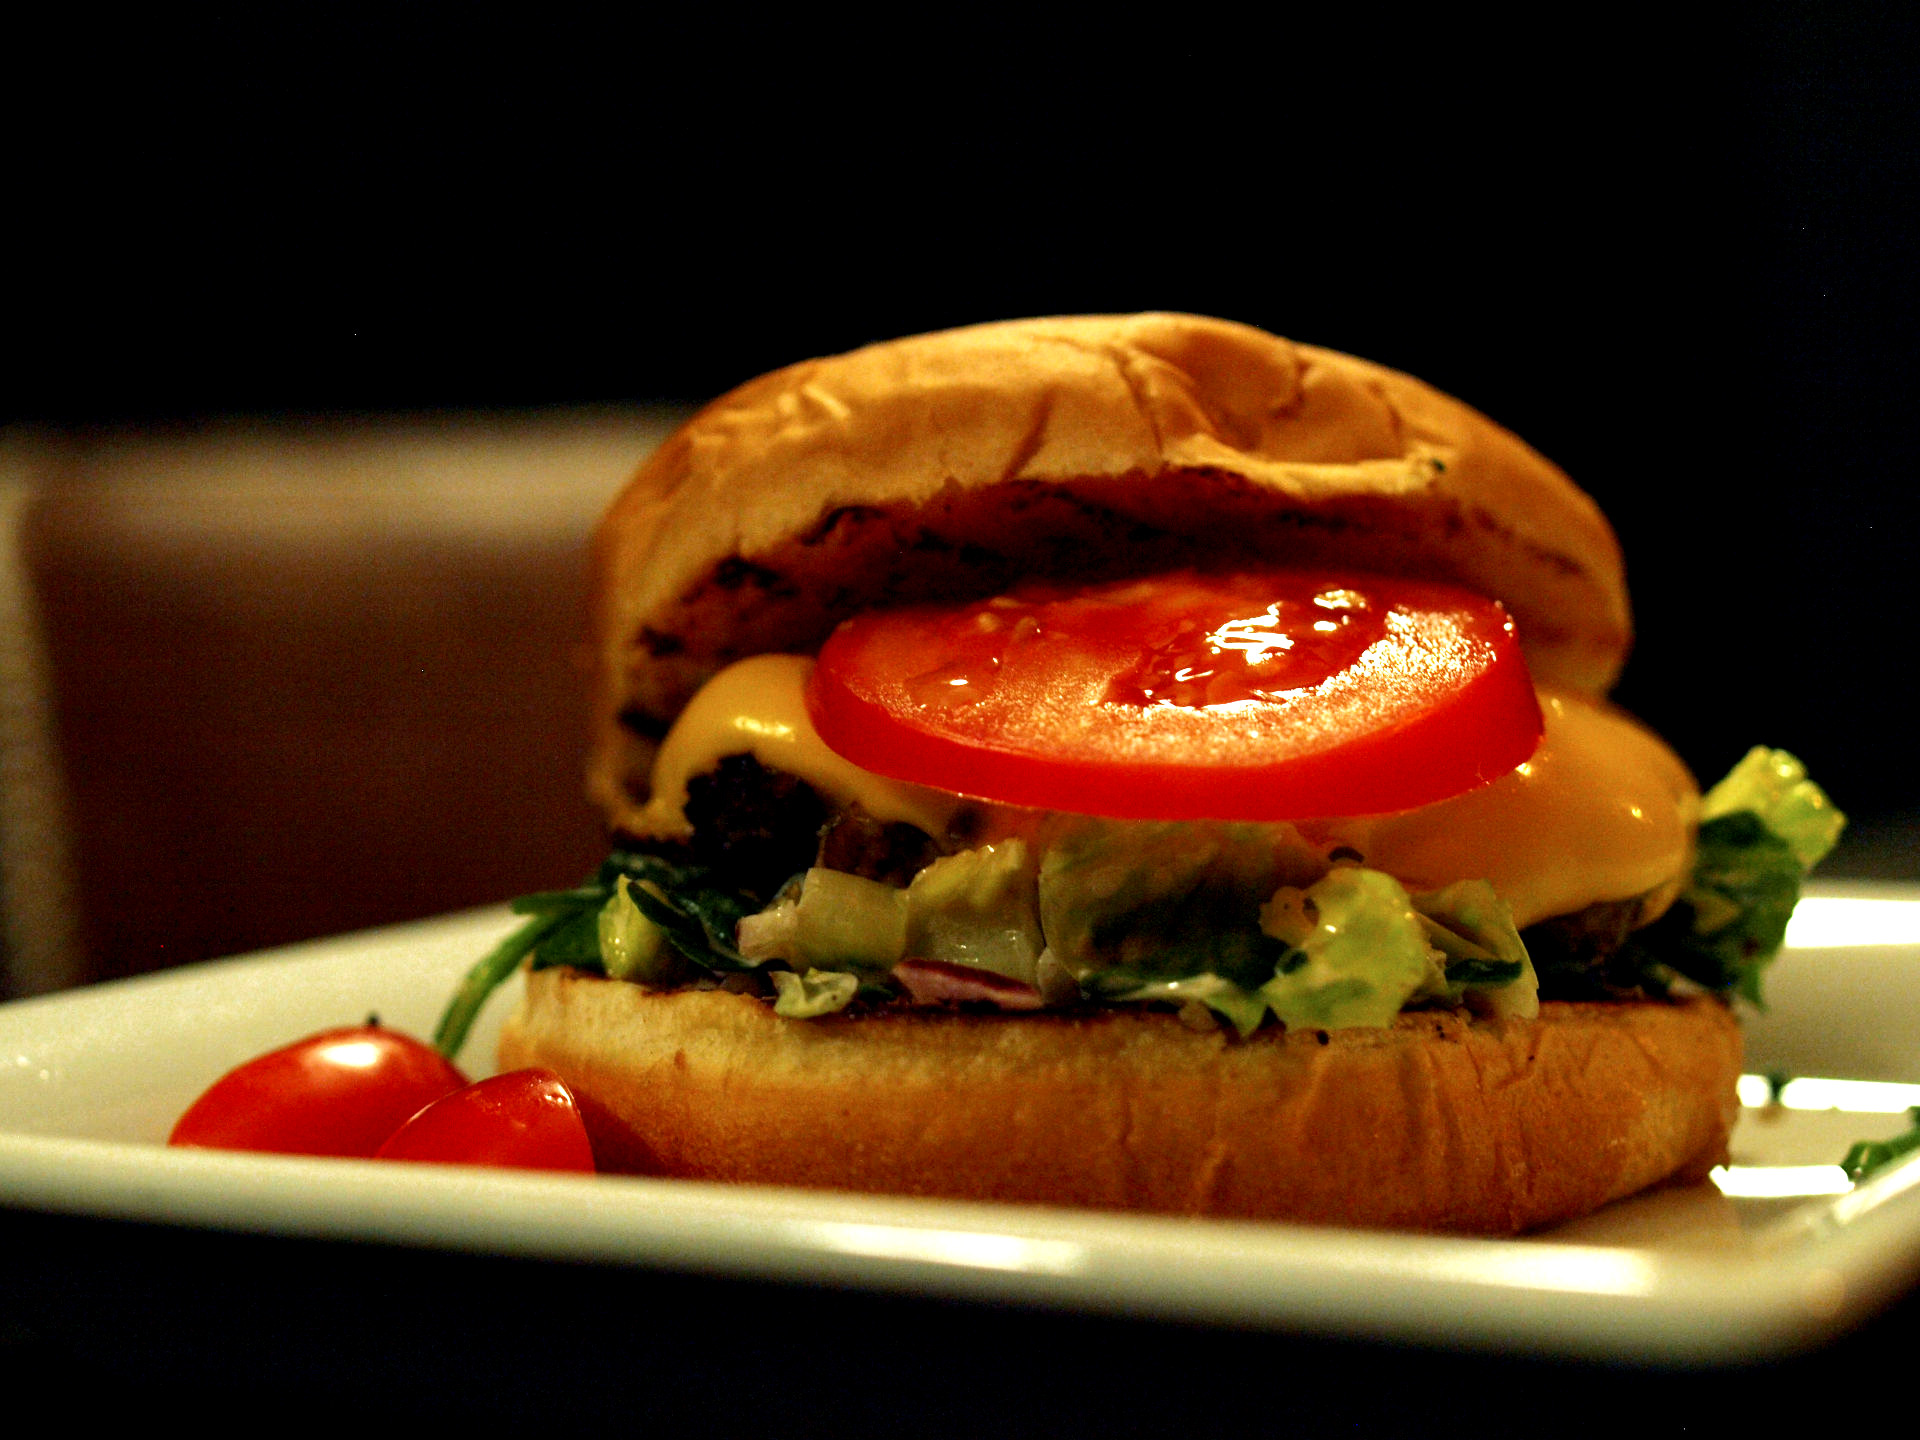 DESEO Tapas Bar - „Deseo Burger“ mit 100% reinem Rinderbeef, Burgersauce, Salat, Zwiebeln und geschmolzenem Käse